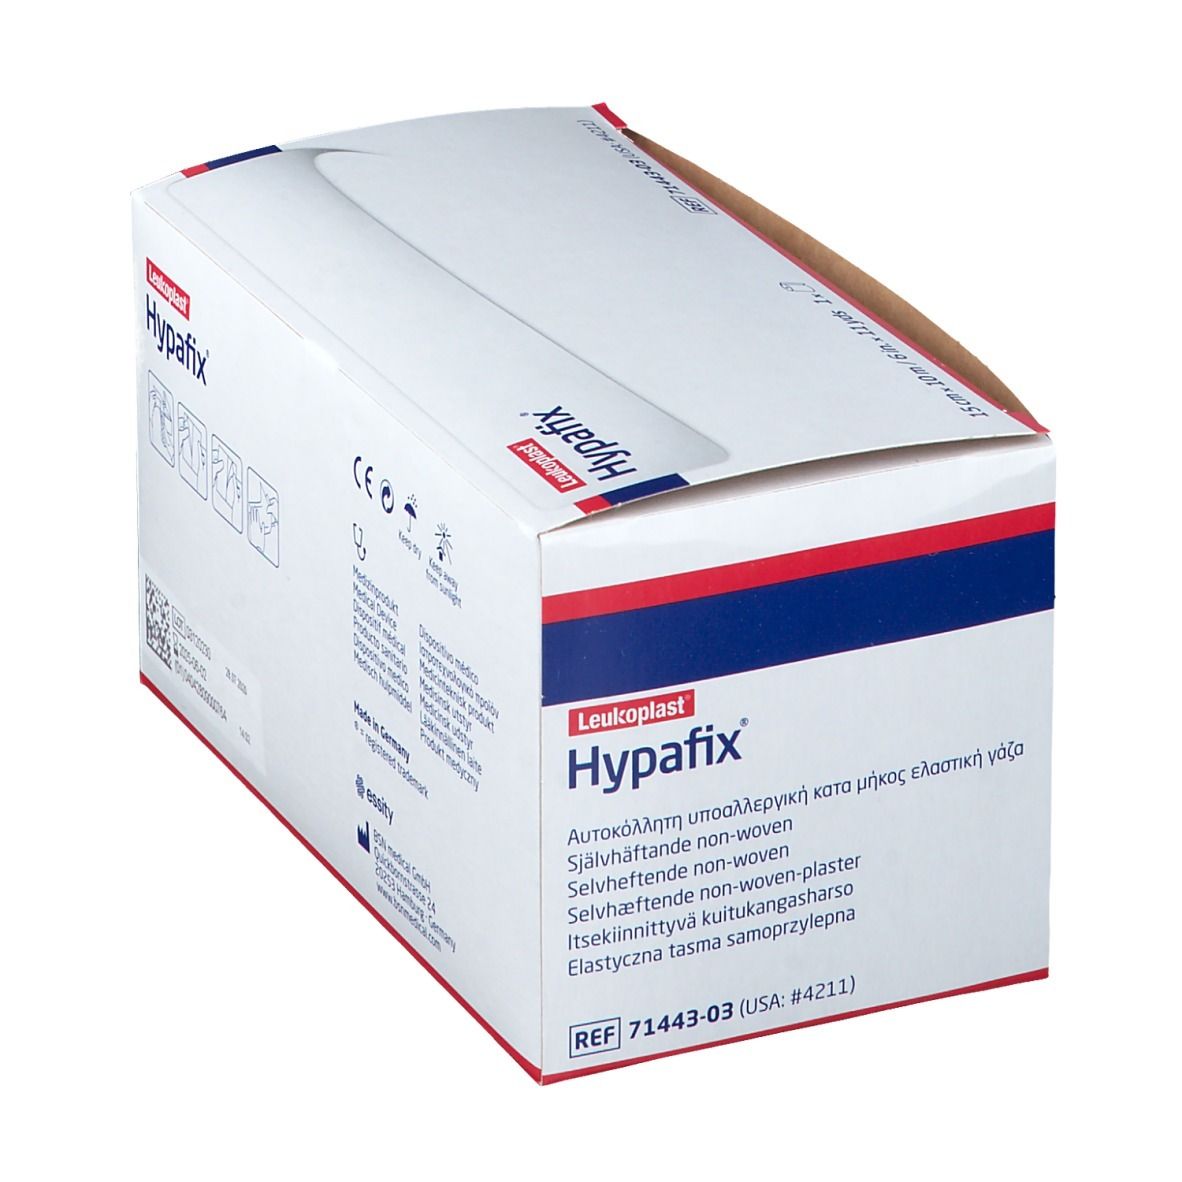 Hypafix® 15 cm x 10 m